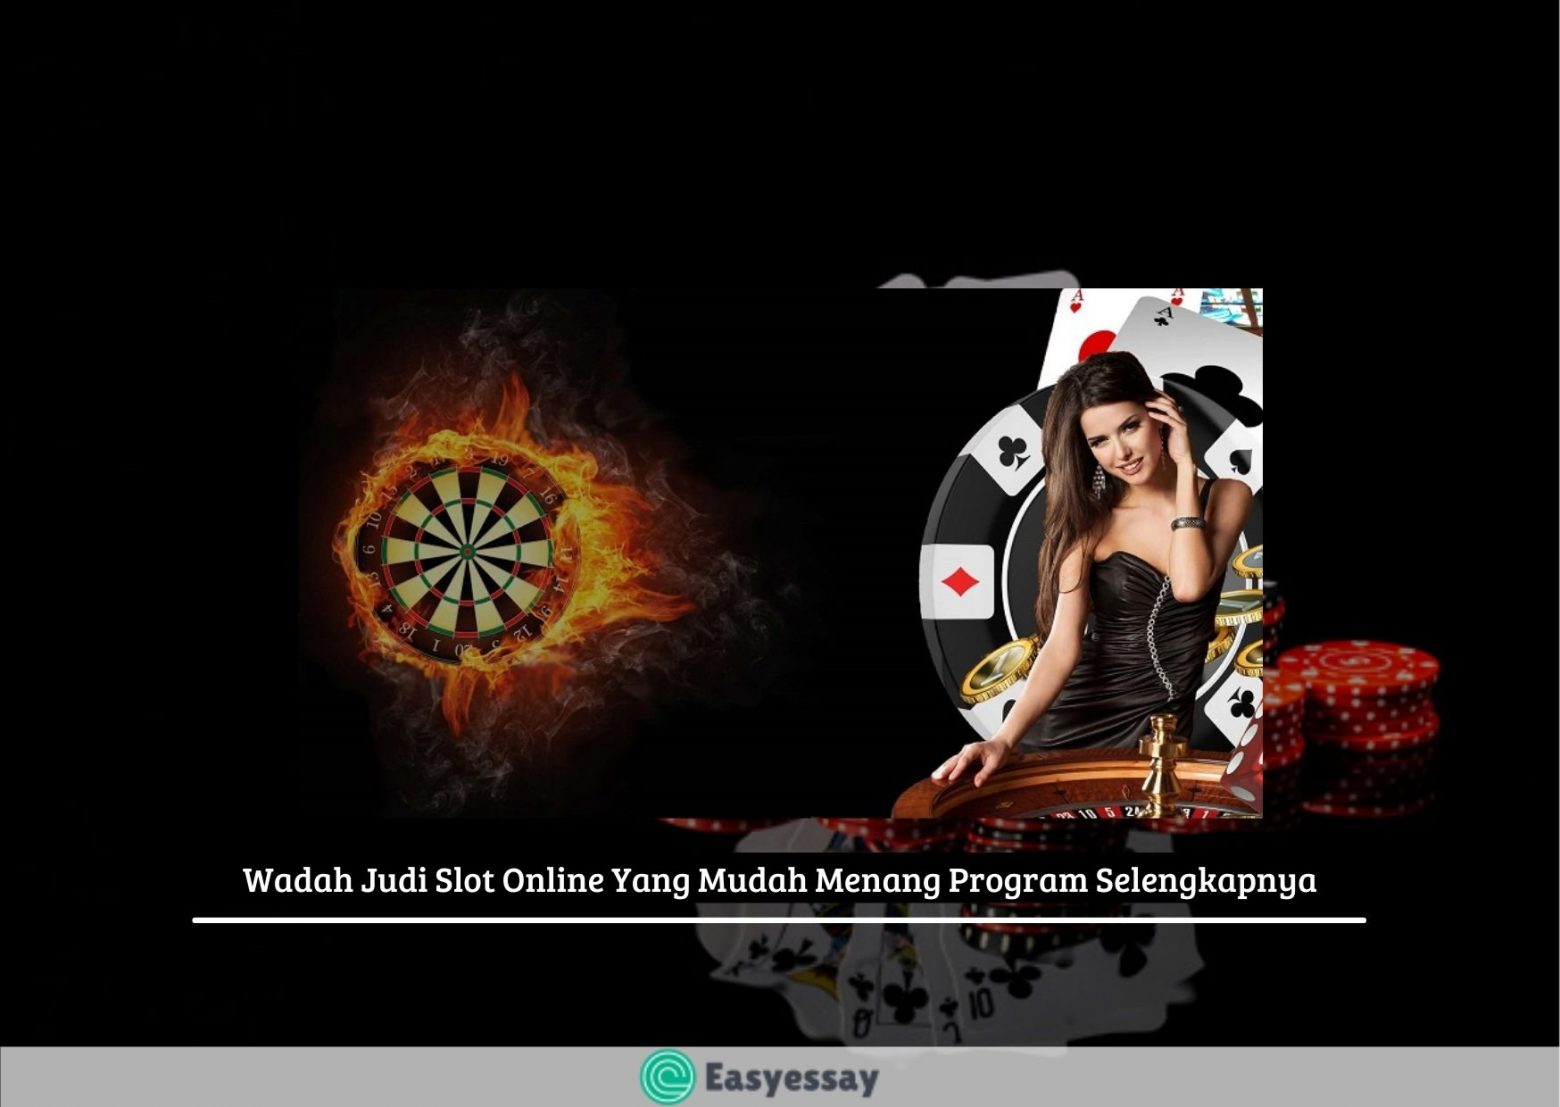 Wadah Judi Slot Online Yang Mudah Menang Program Selengkapnya